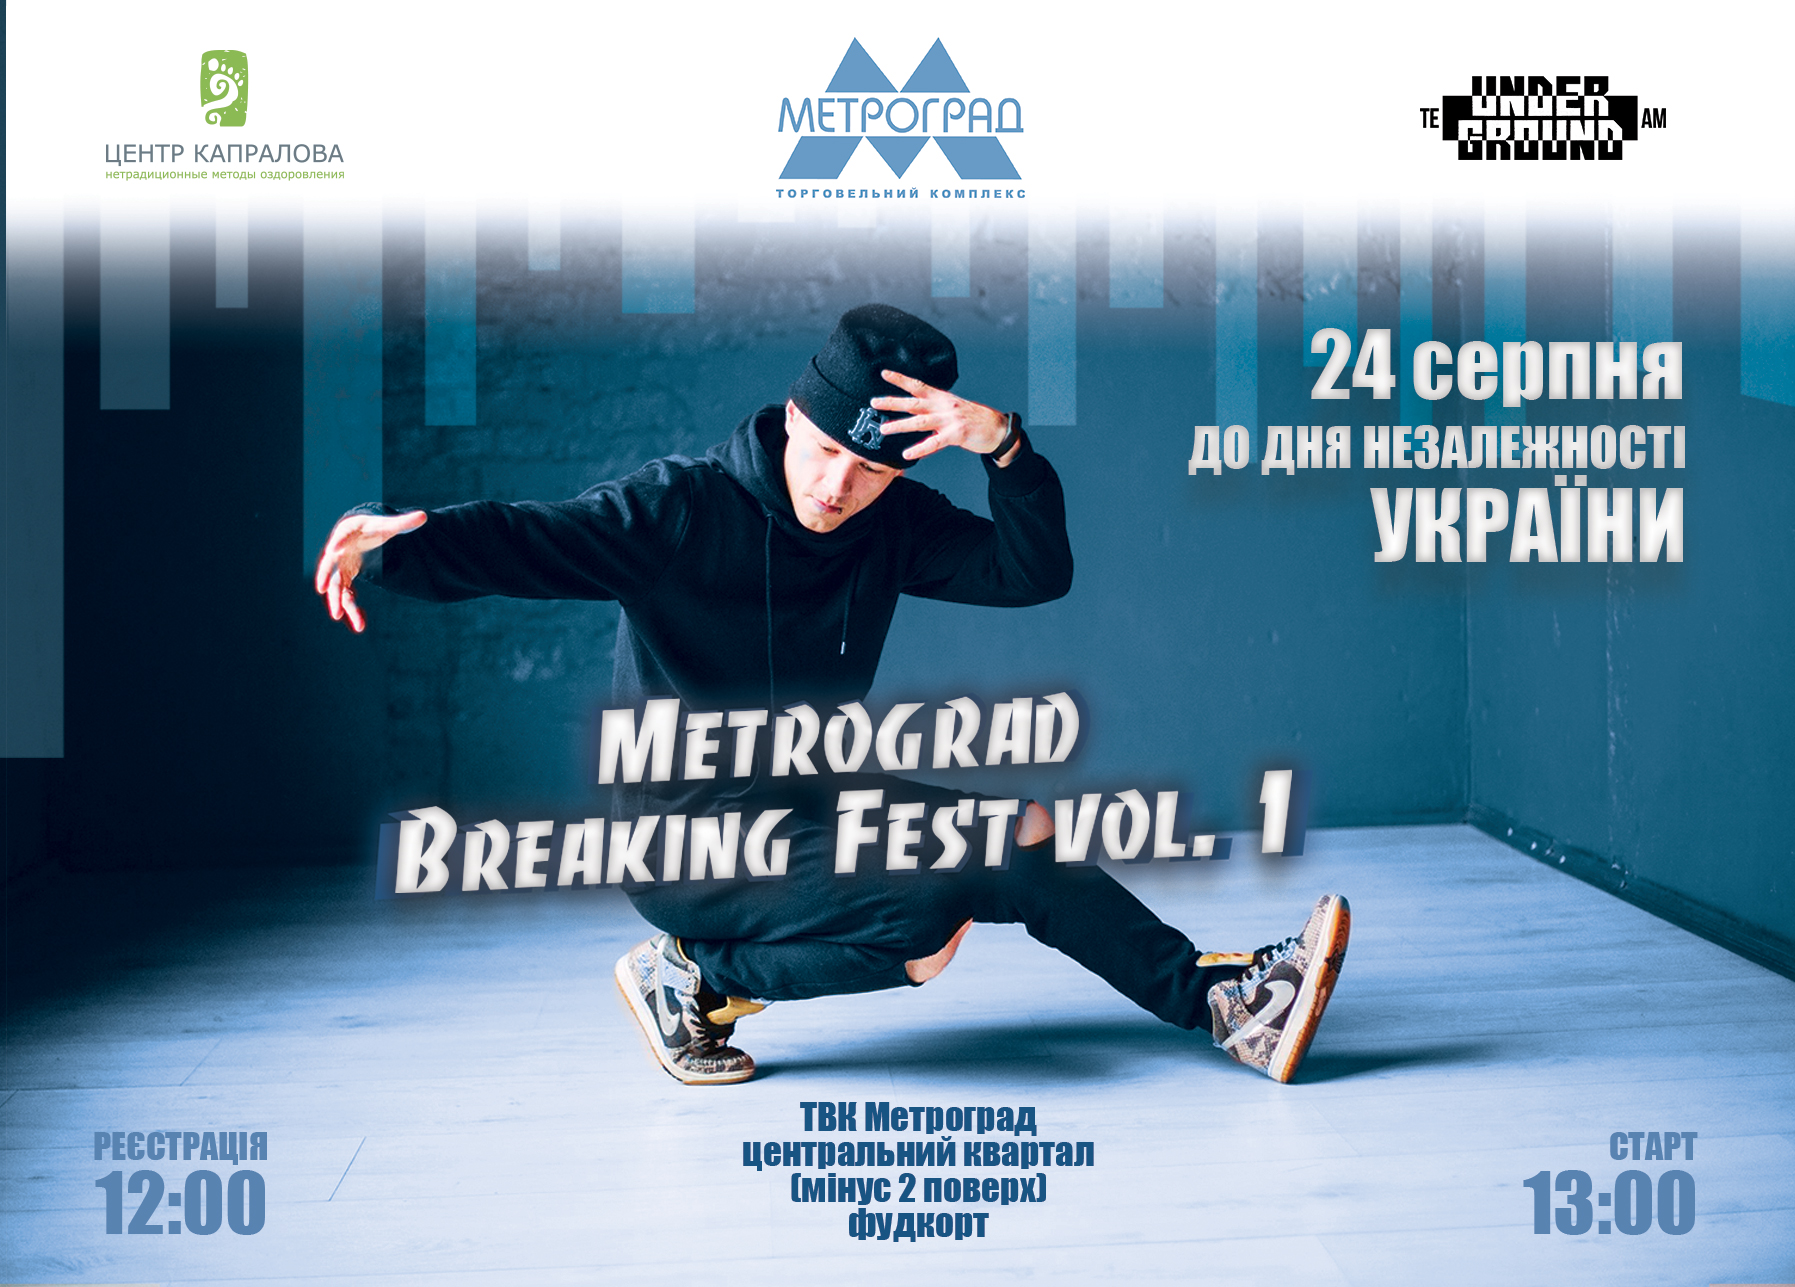 Metrograd breaking Fest 2019 на новому фудкорті!